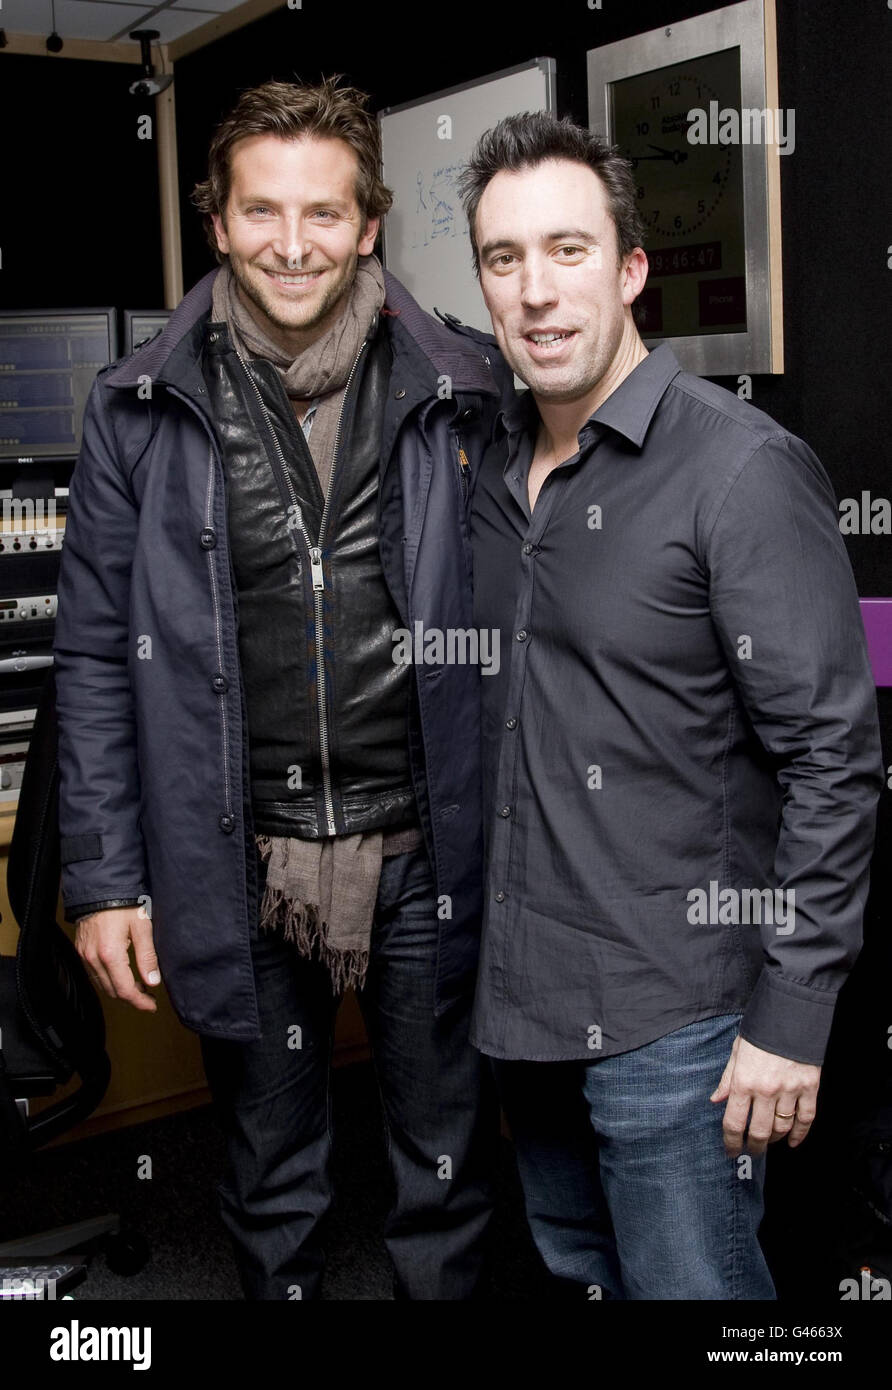 Bradley Cooper con el presentador del desayuno de Absolute Radio Christian o'Connell, en Absolute Radio en el centro de Londres. Foto de stock